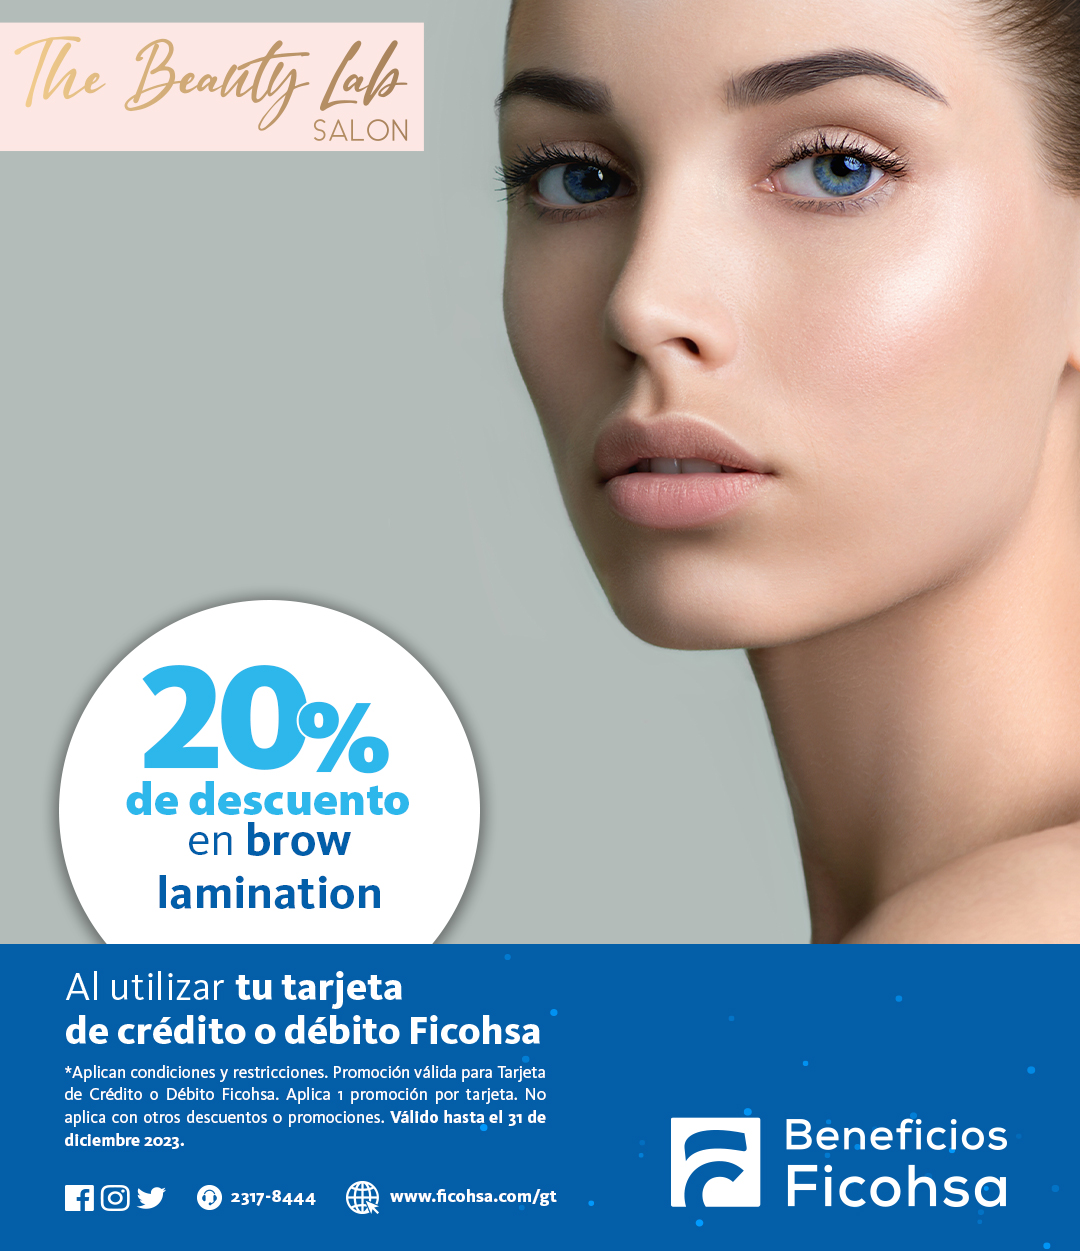 20% de descuento en Brow Lamination en The Beauty Lab